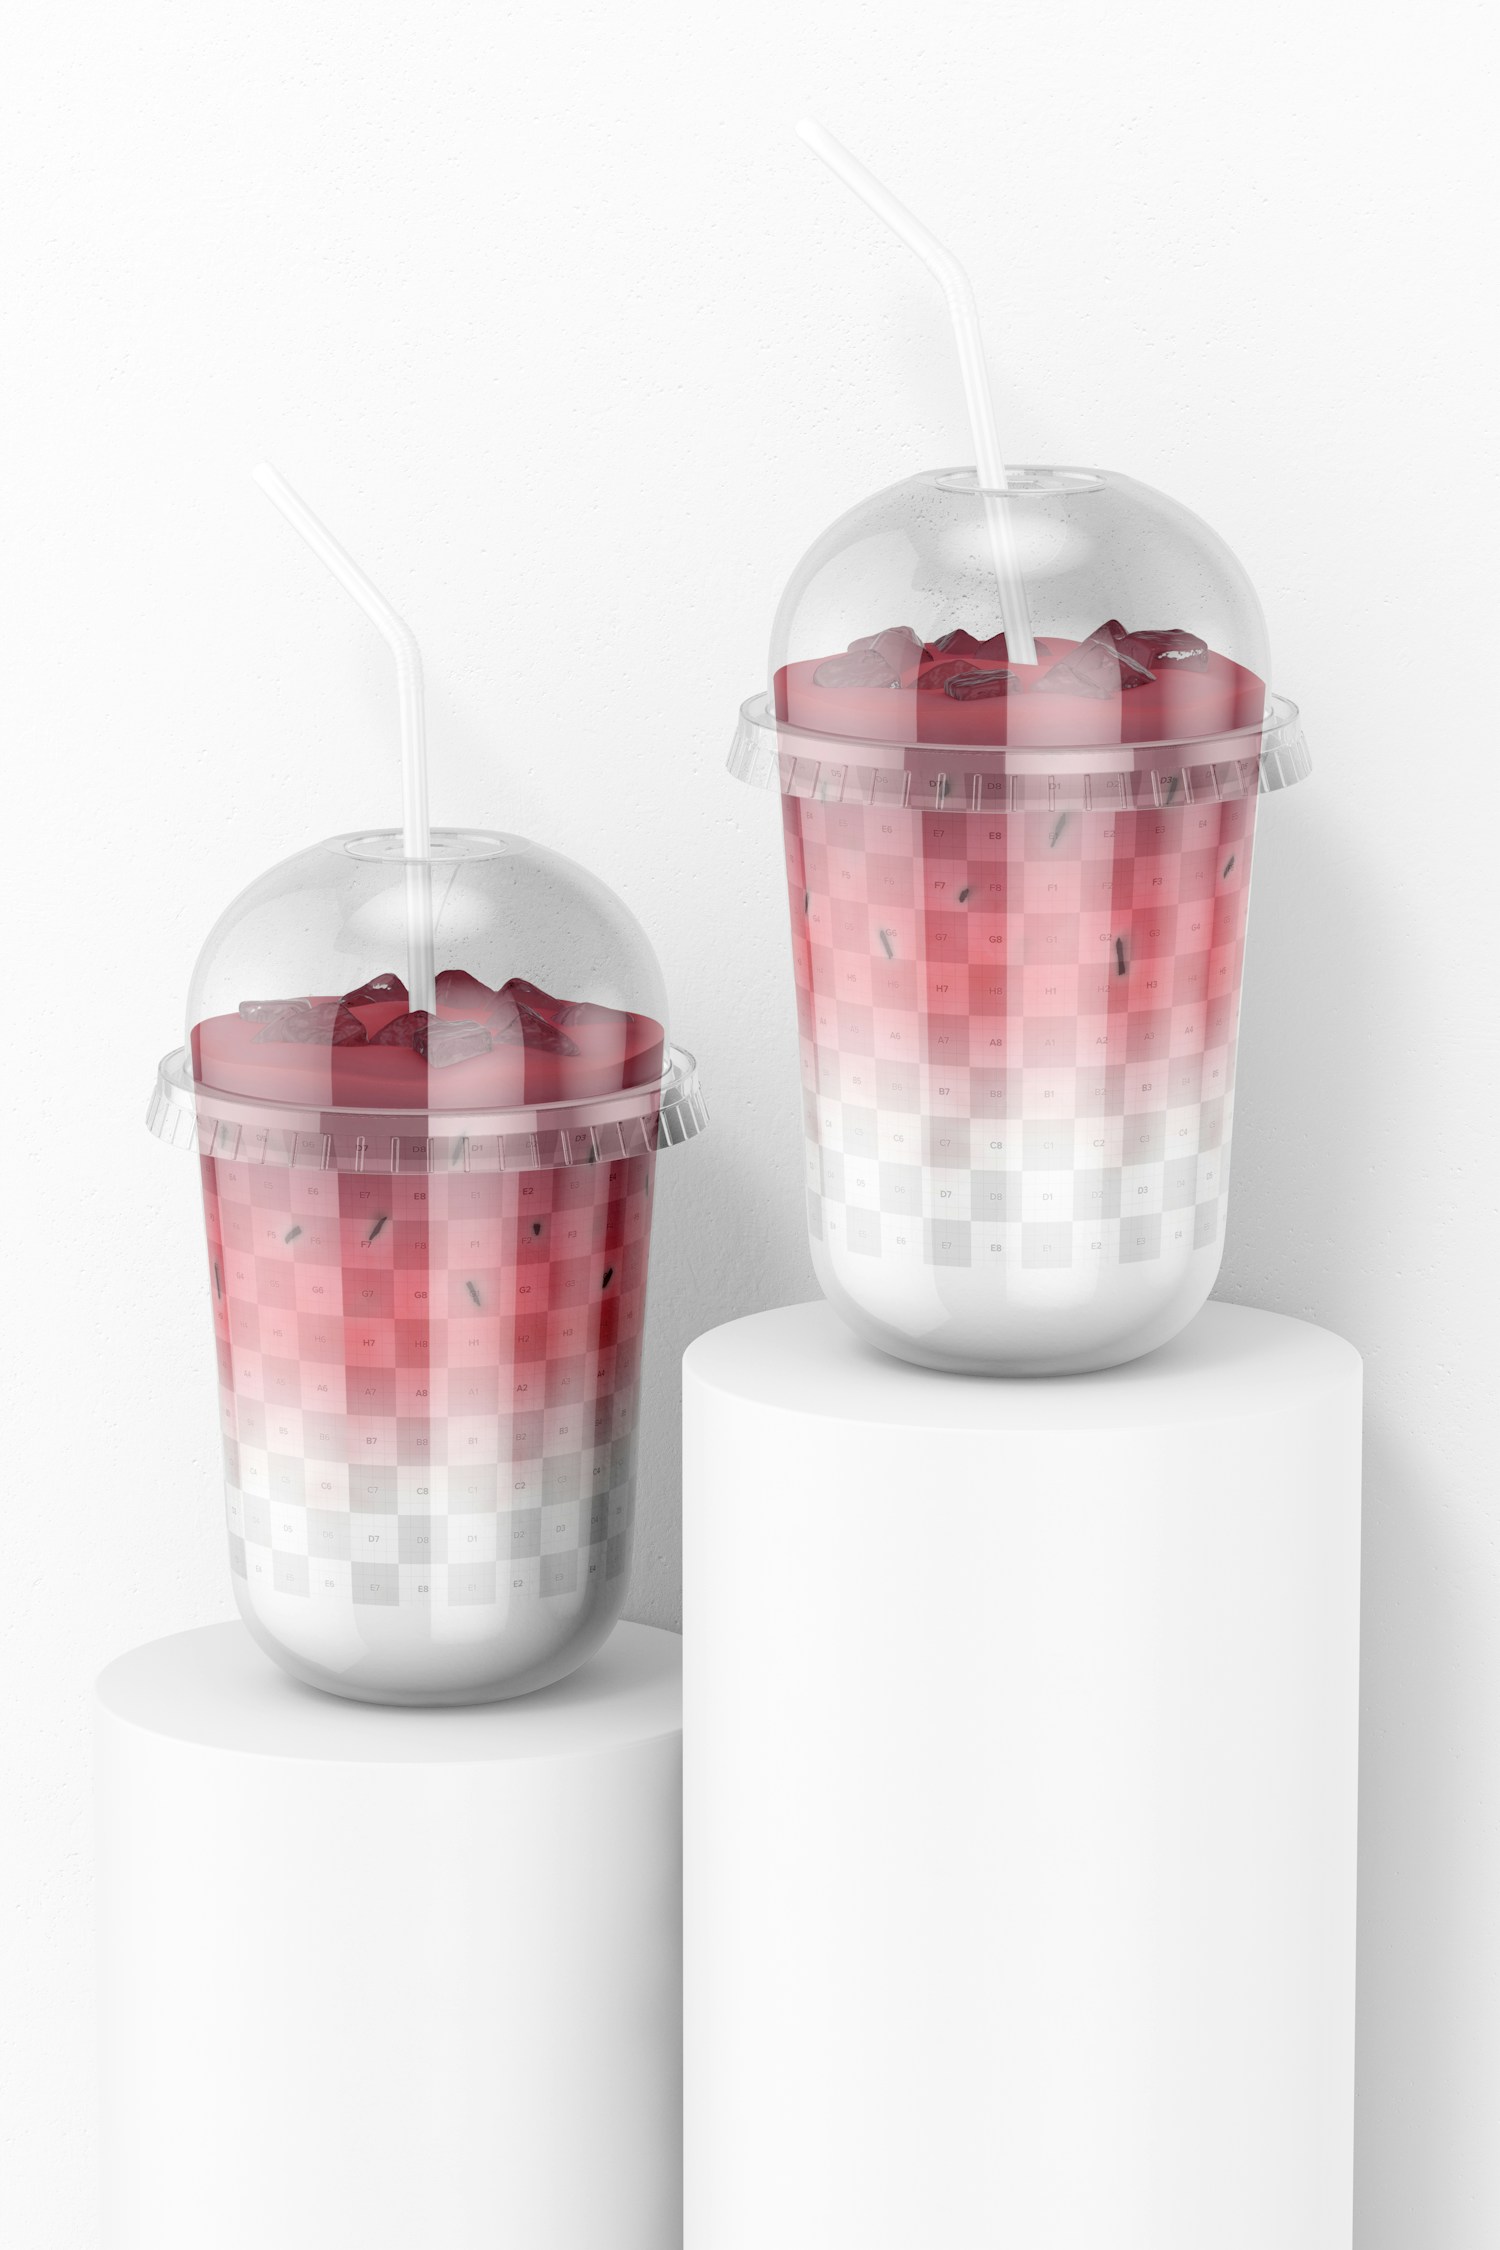 17 oz Plastic Cups Mockup